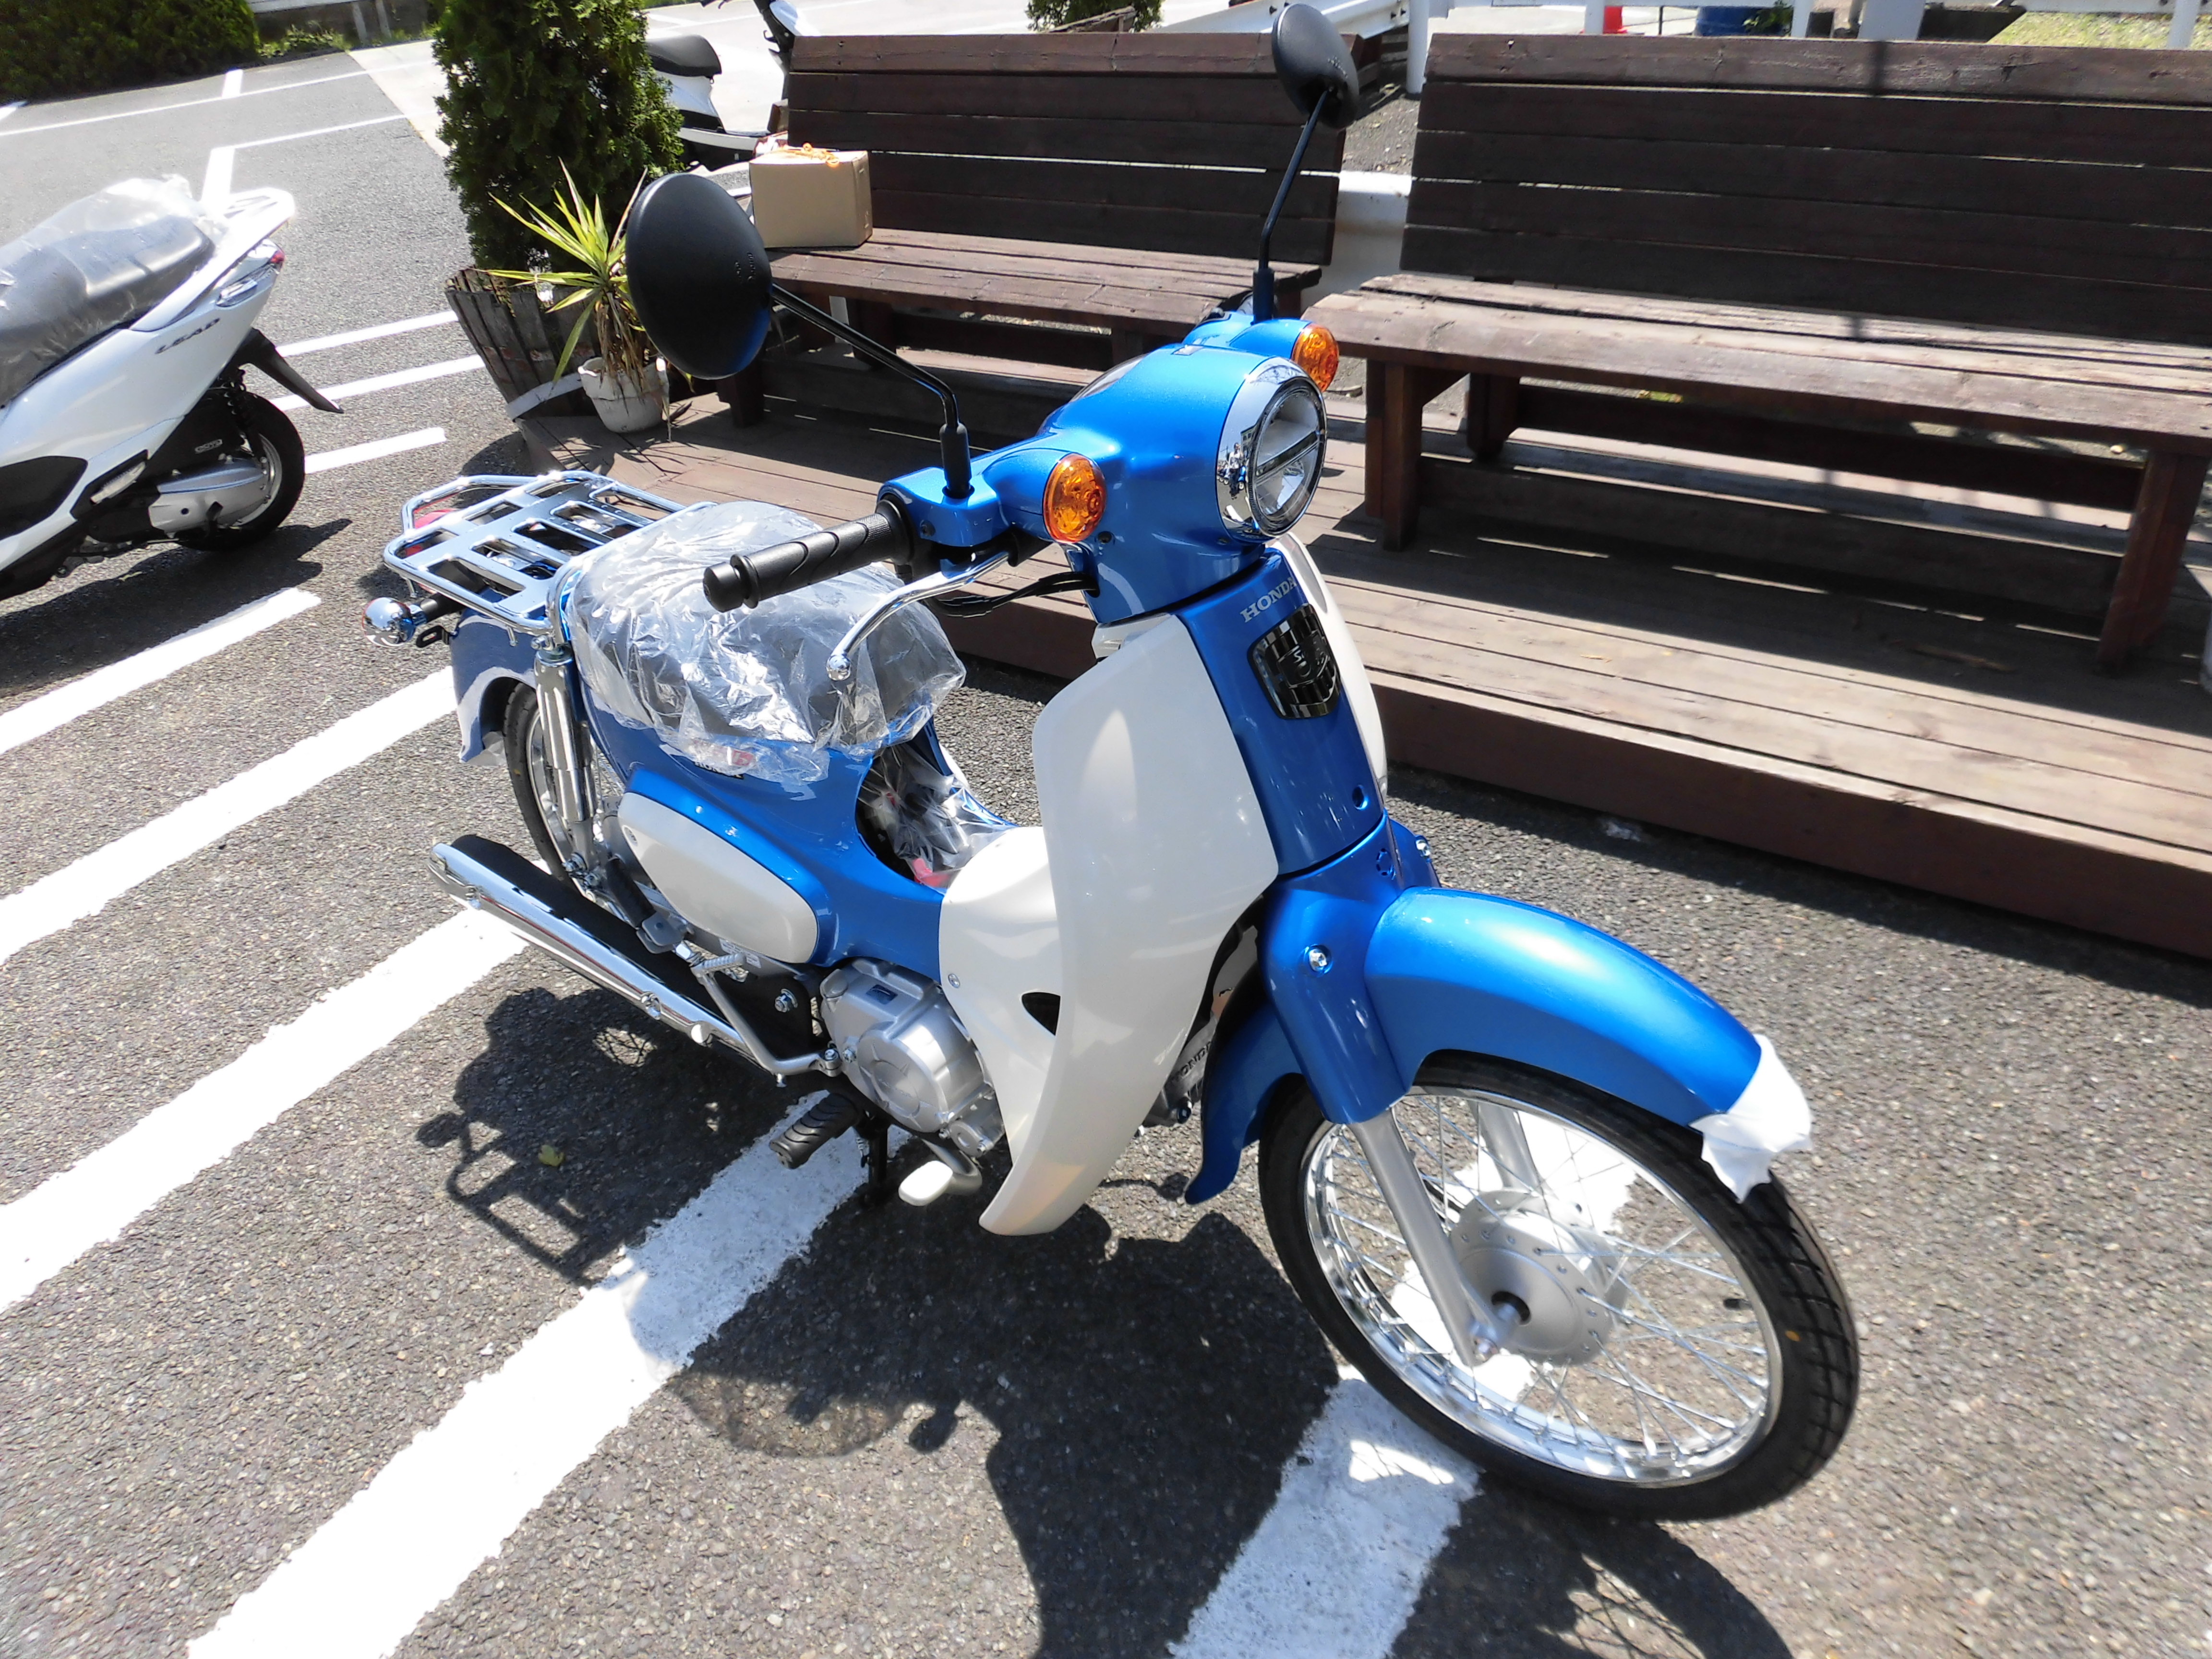 スーパーカブ110入庫しました 最新情報 U Media ユーメディア 中古 バイク 新車バイク探しの決定版 神奈川 東京でバイク探すならユーメディア